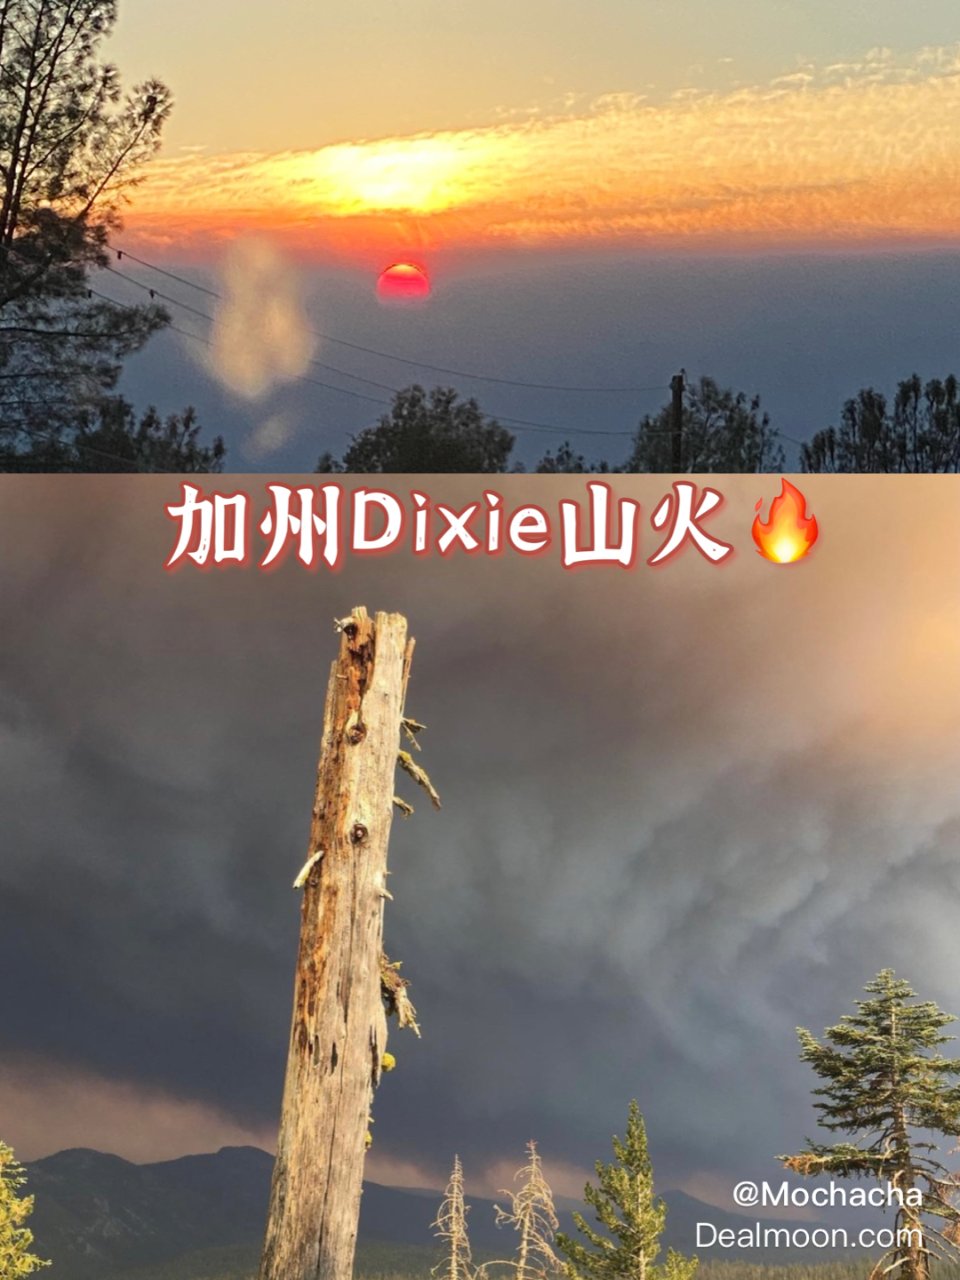 🔥加州Dixie山火🔥...